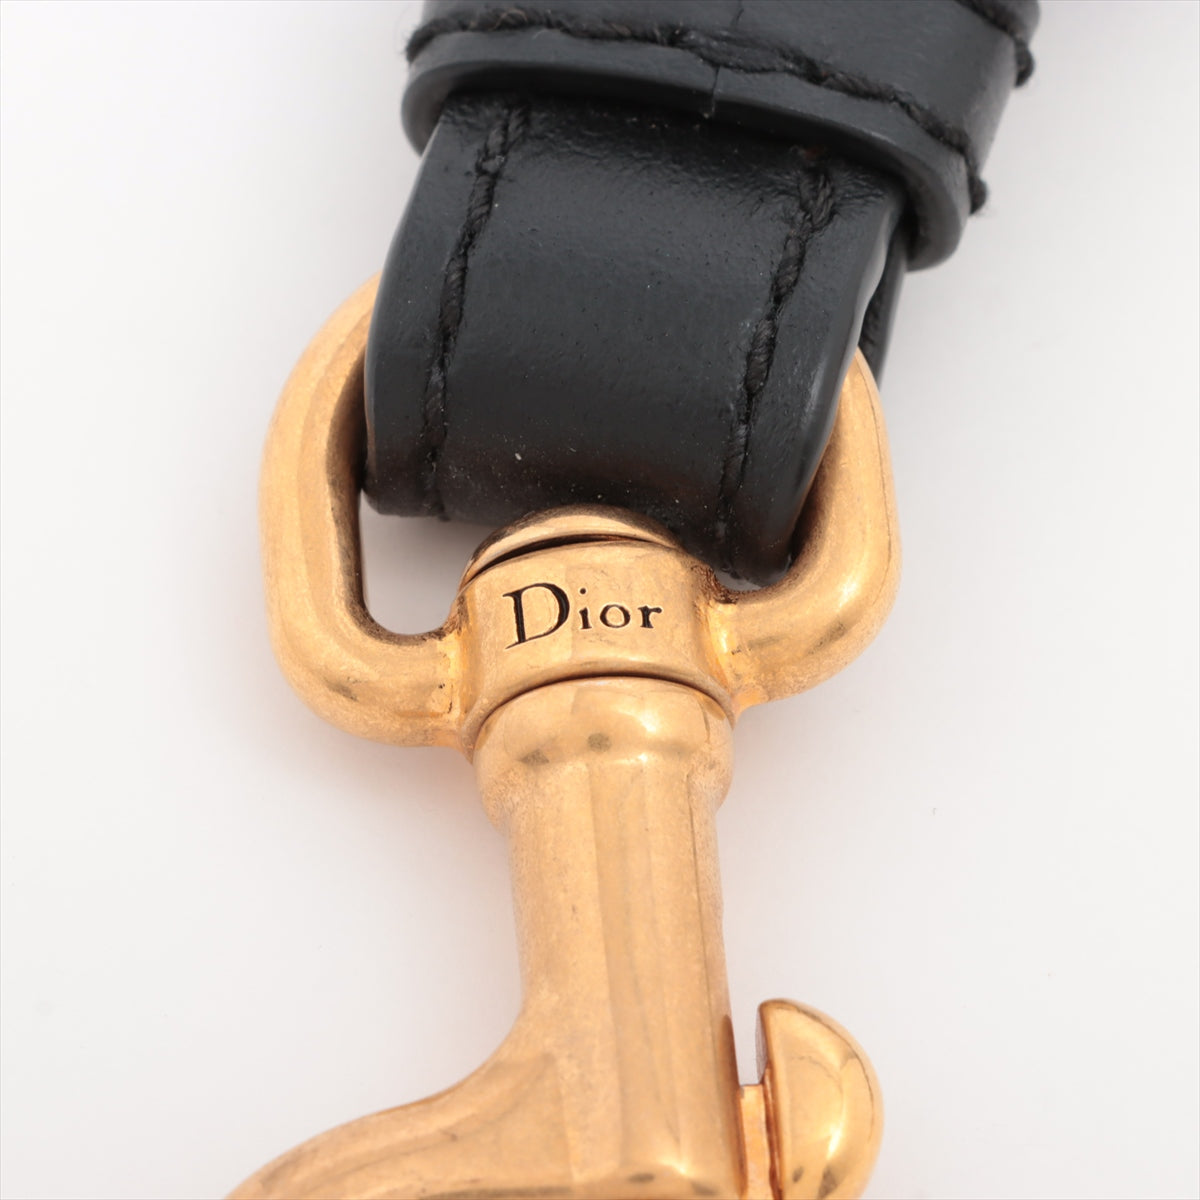 Christian Dior Shoulder strap Canvas & leather Black